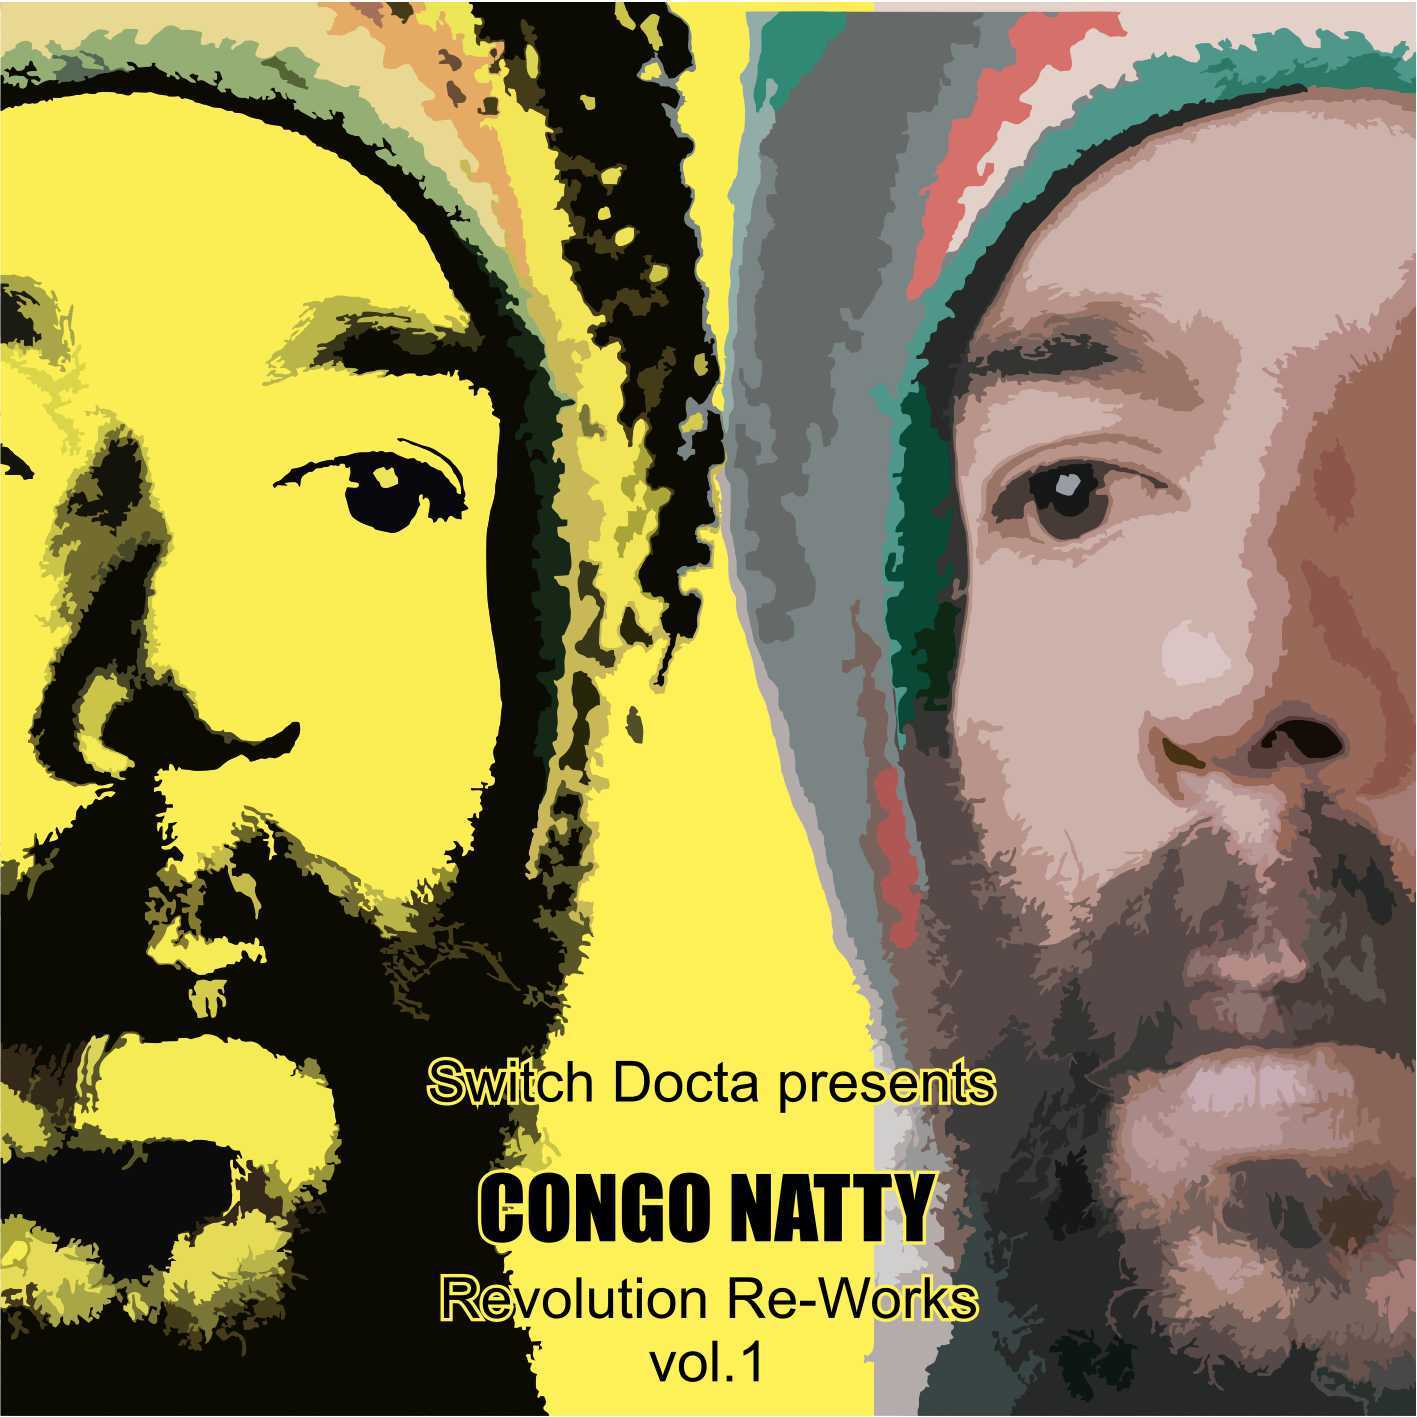 84_Congo_Natty_Revolution_Re_Works_Vol1_COVER.jpg